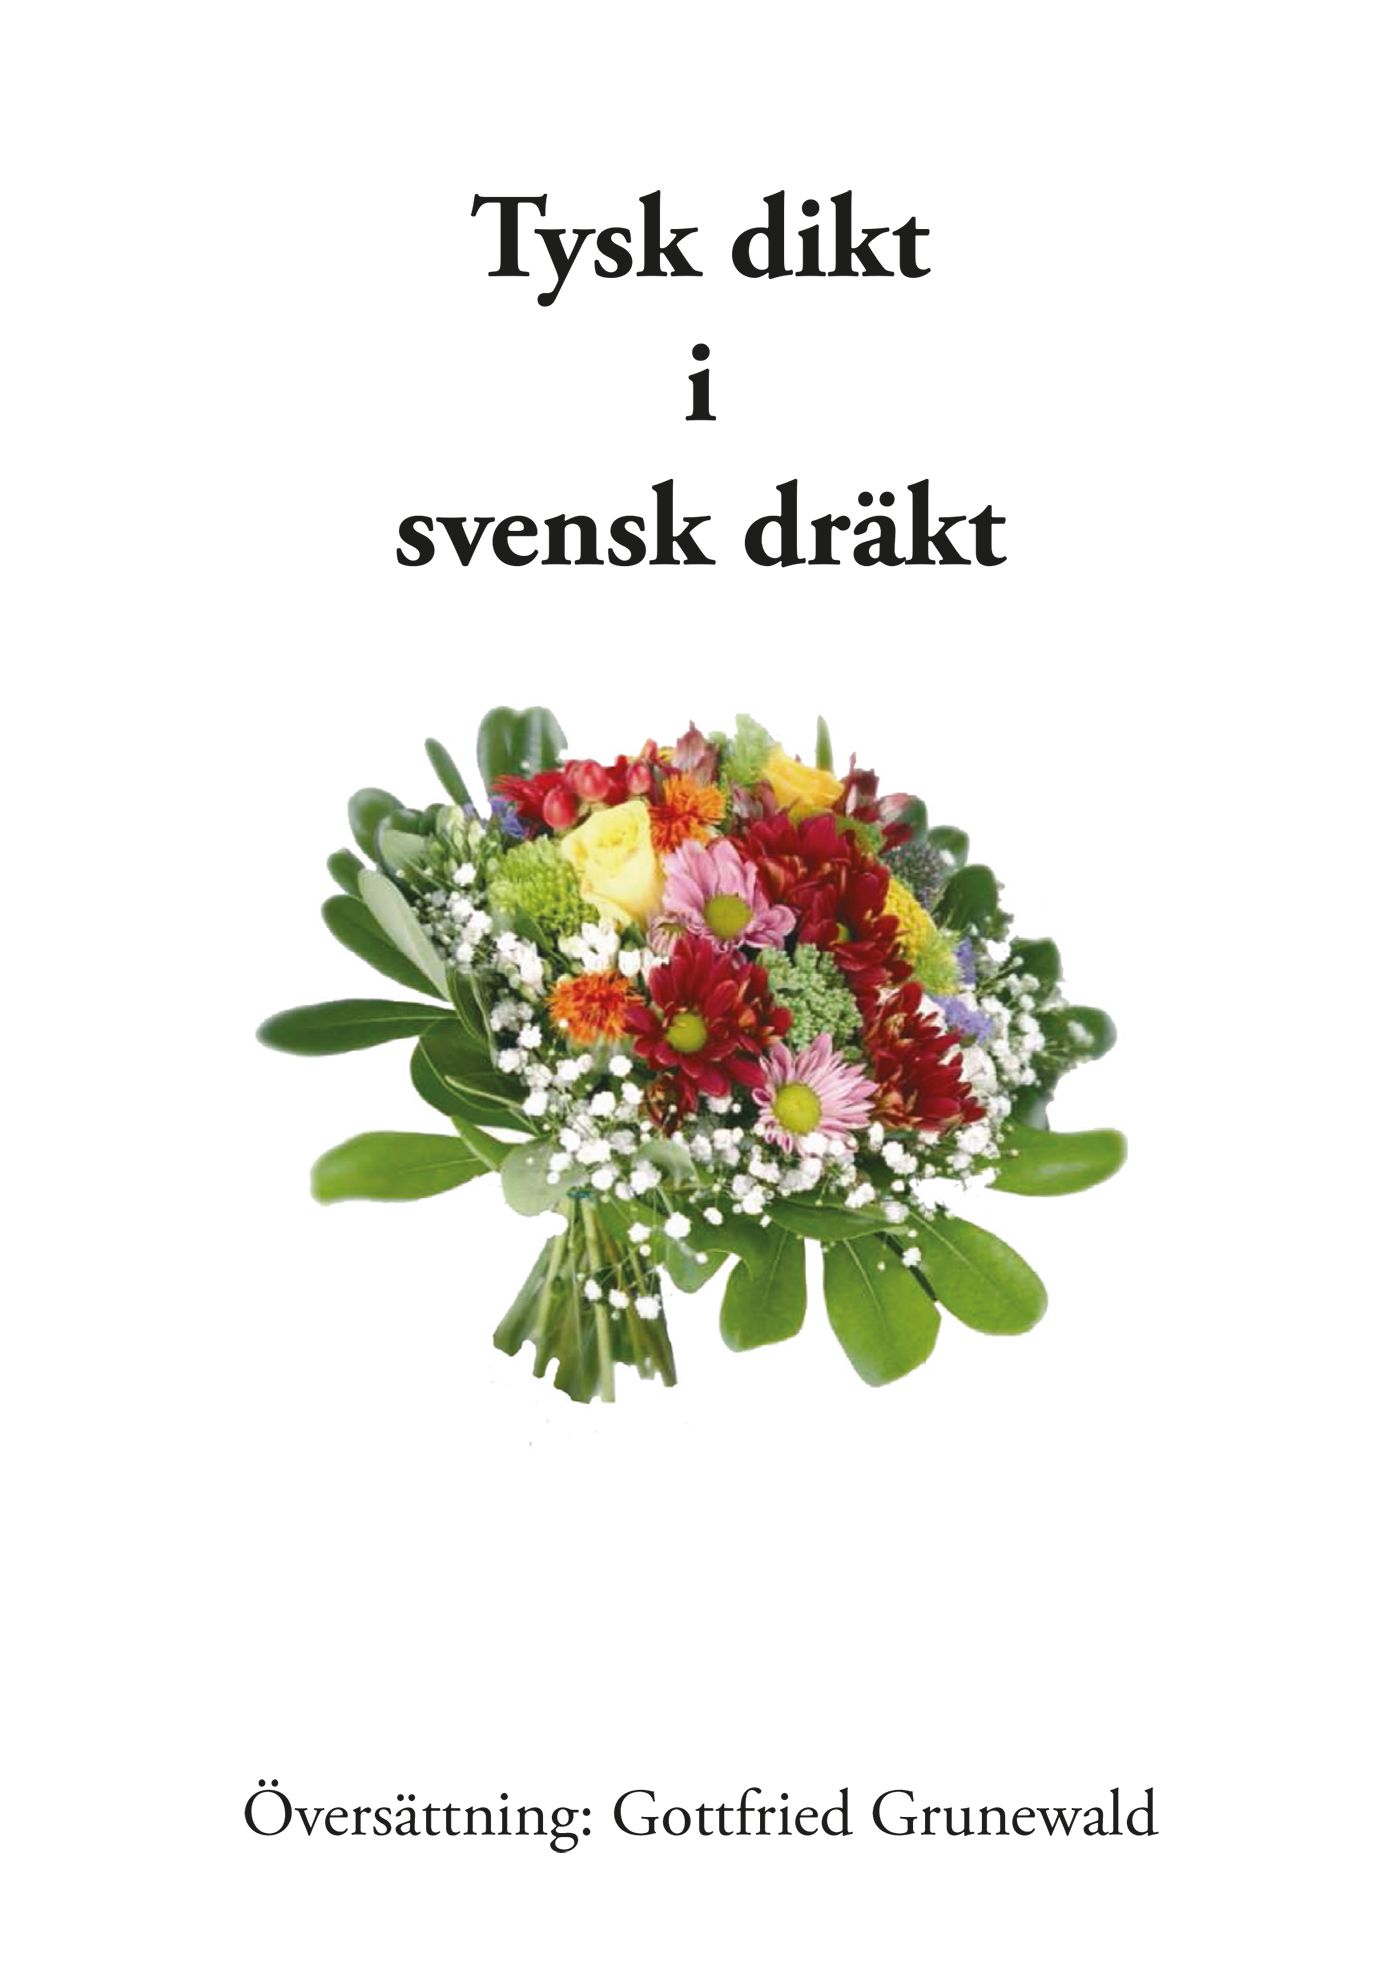 Tysk dikt i svensk dräkt, e-bok av Gottfried Grunewald